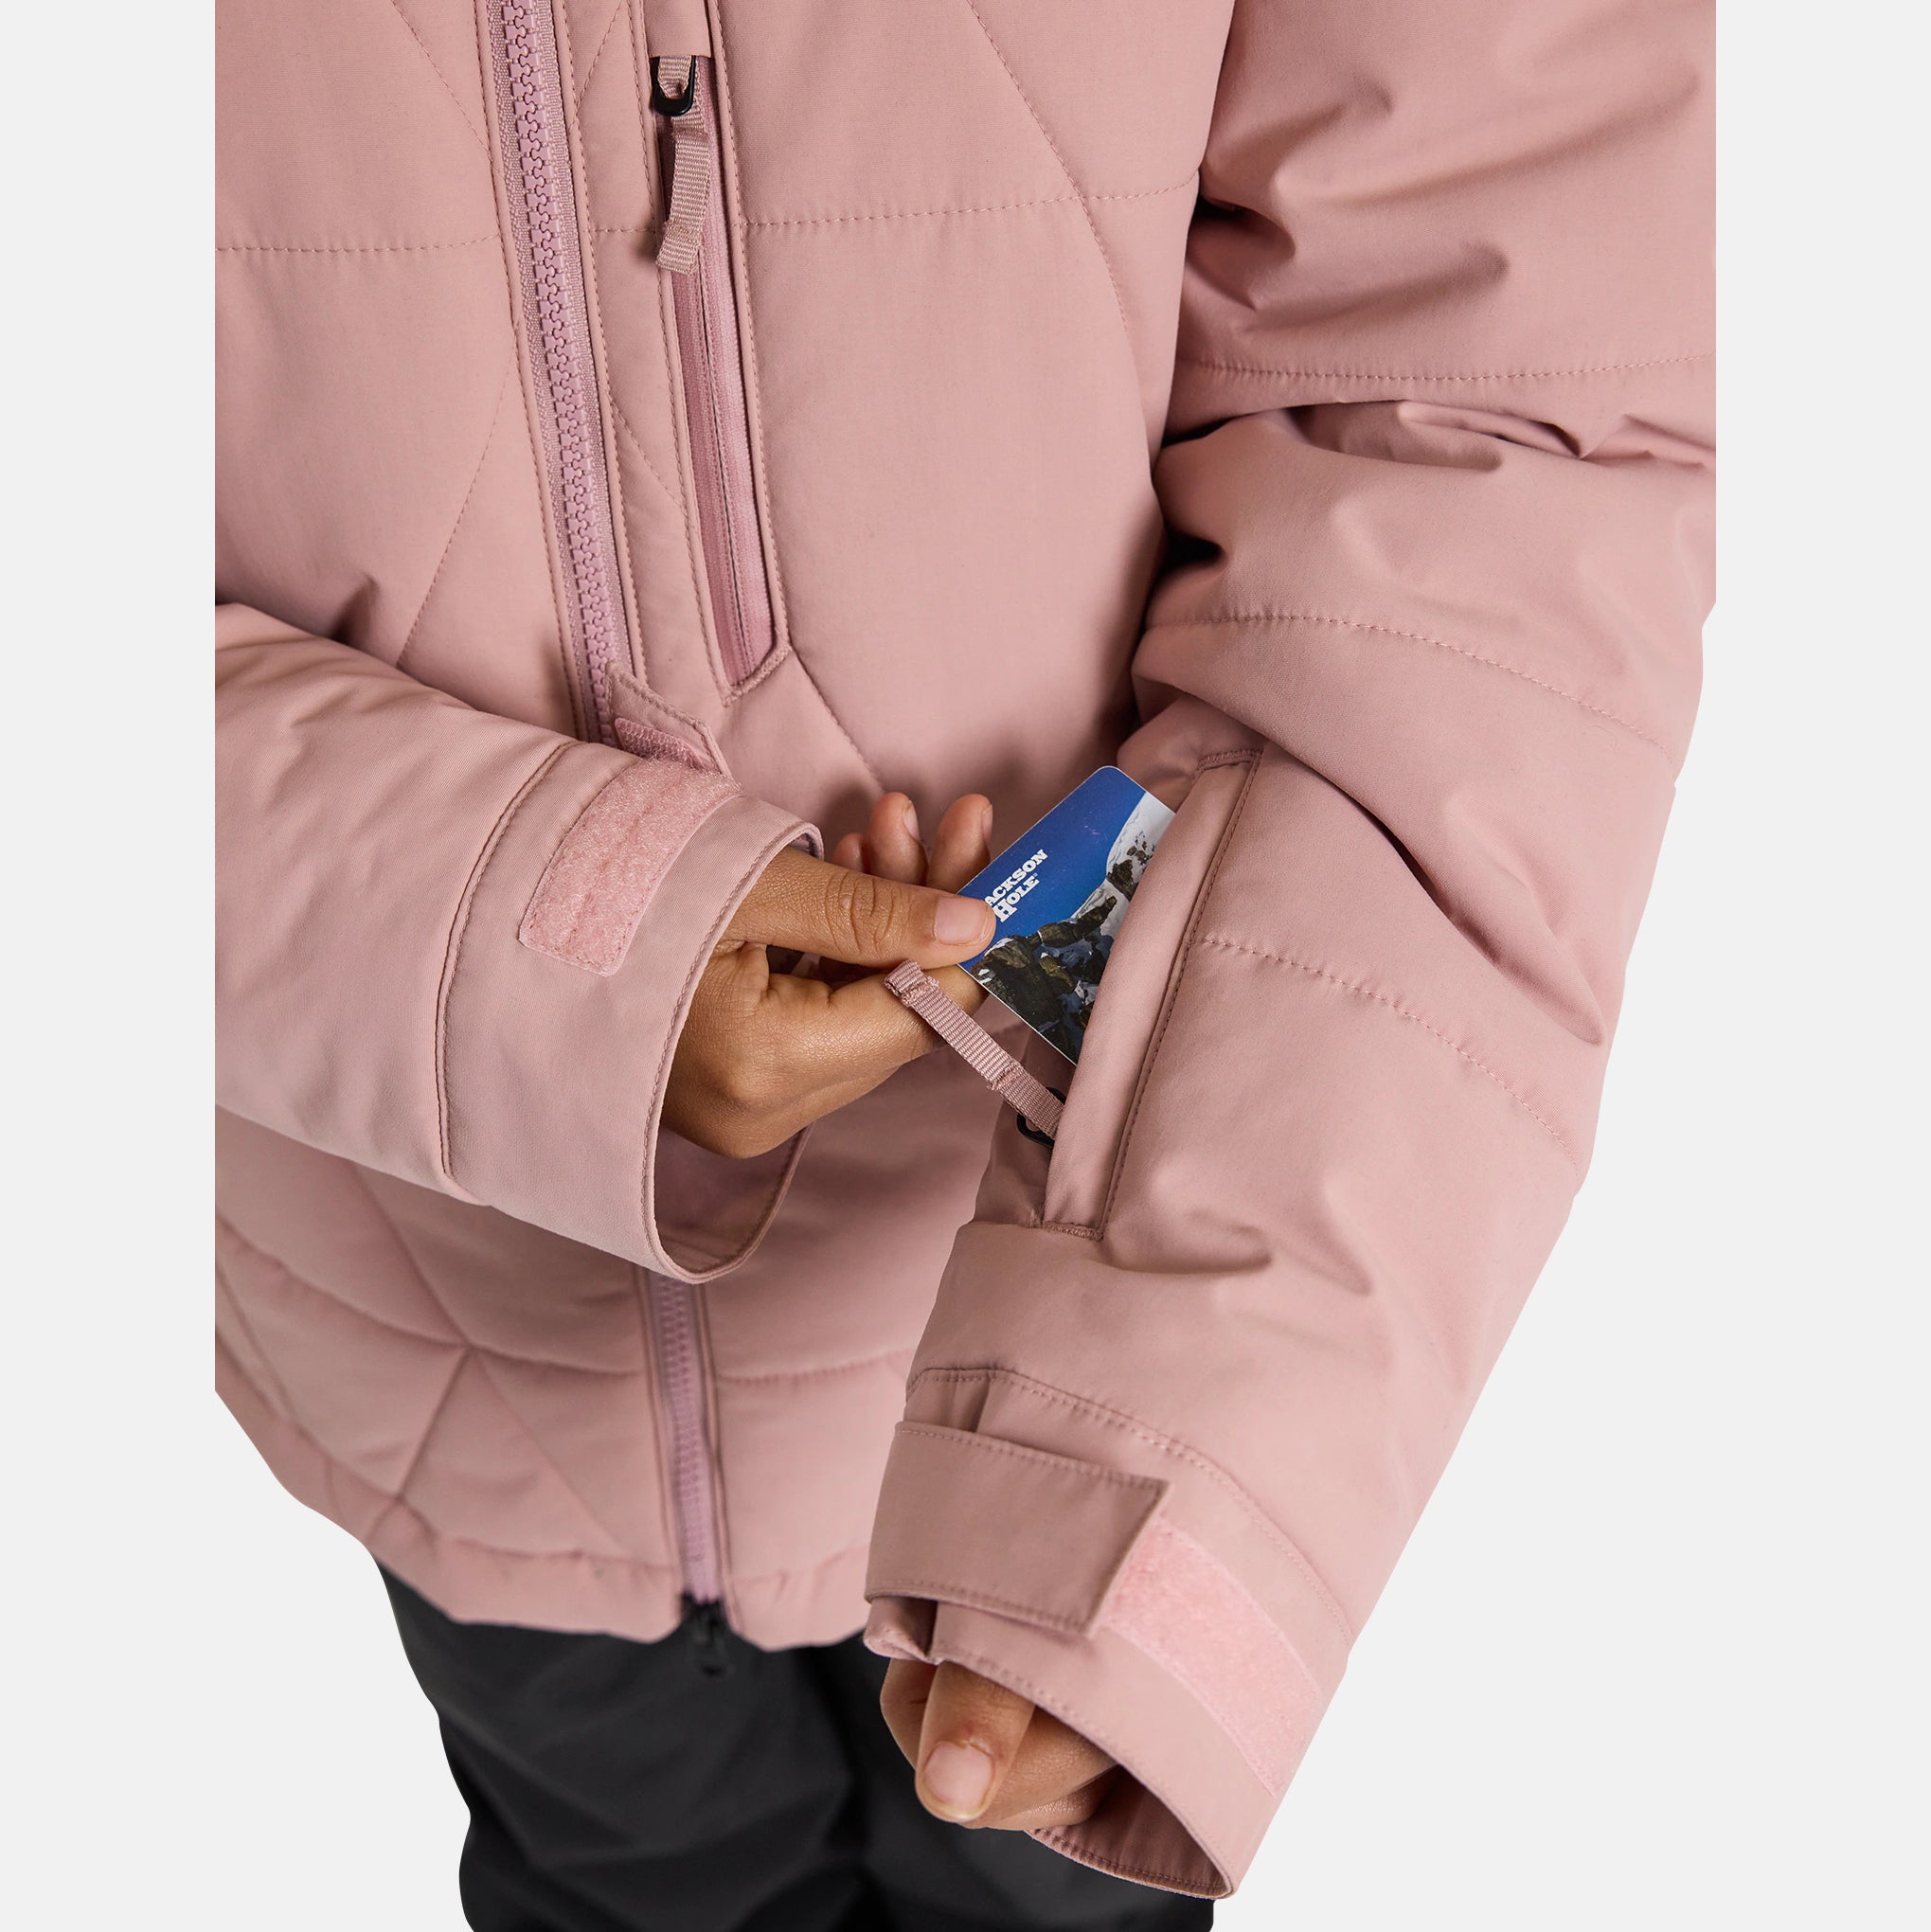 Girls Pink Snow Jacket